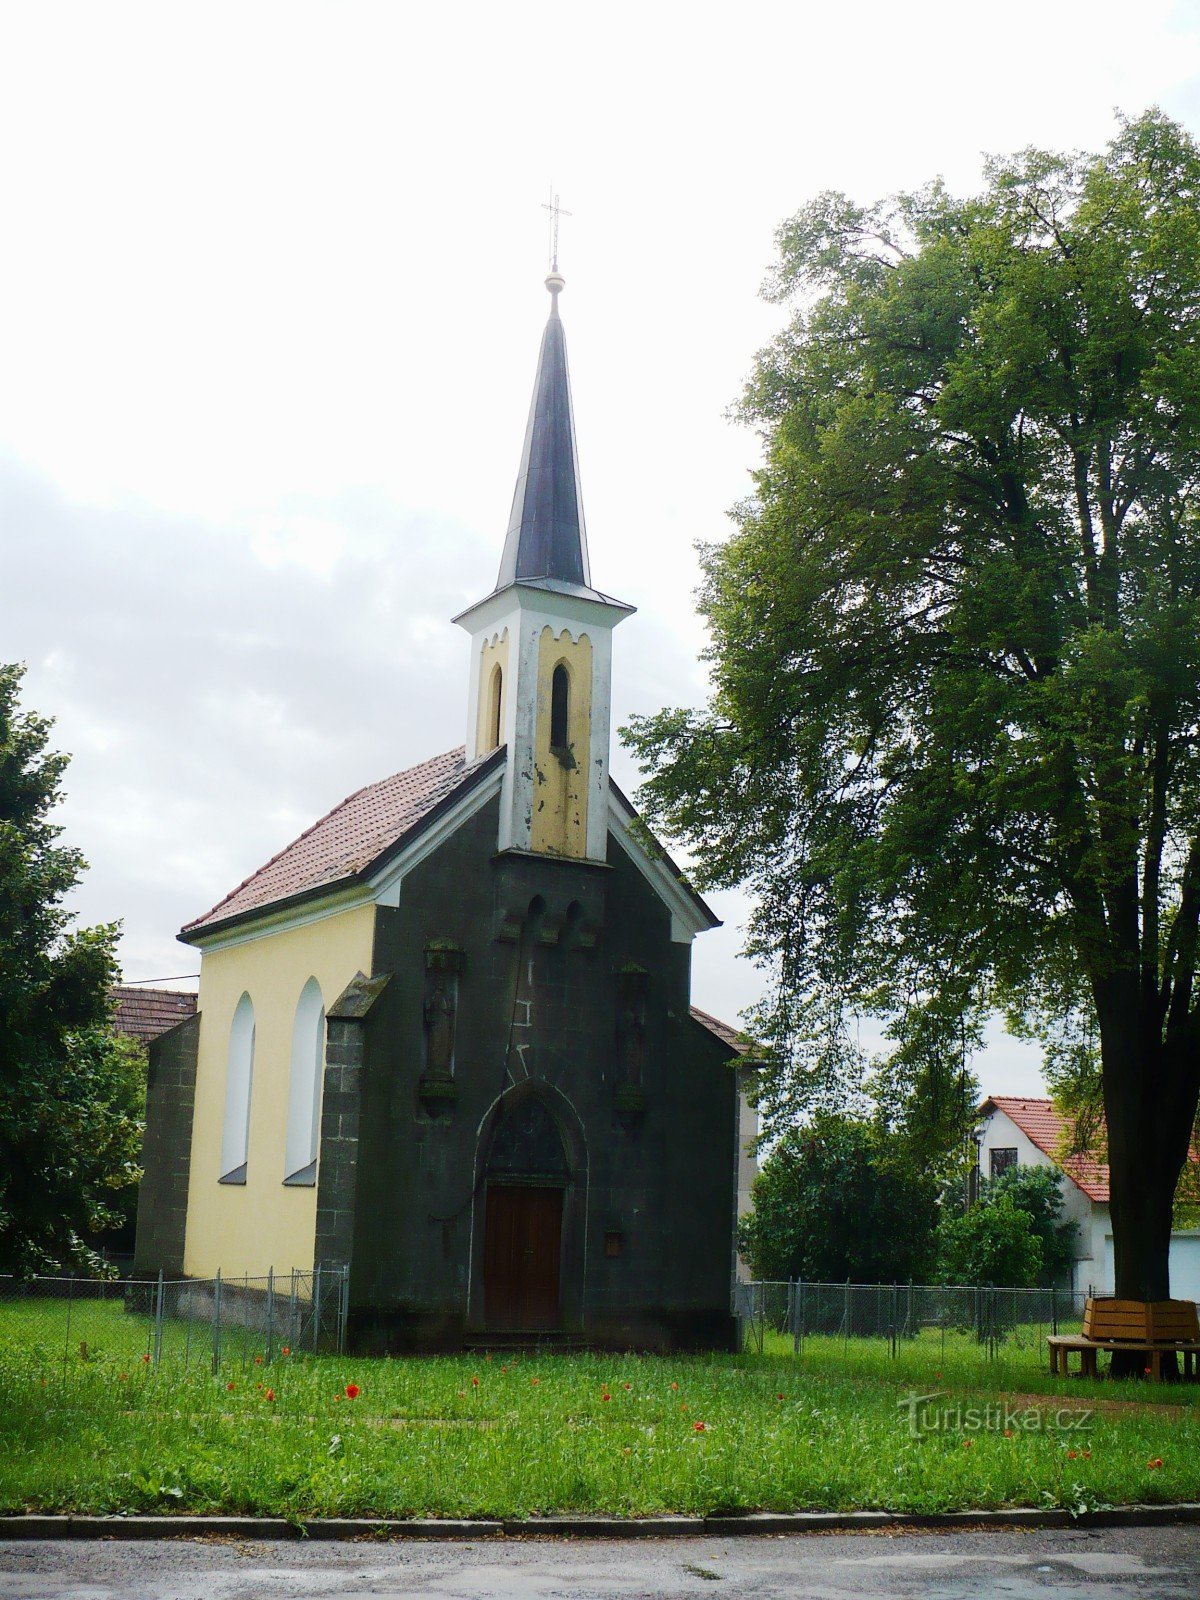 トポル村の教会